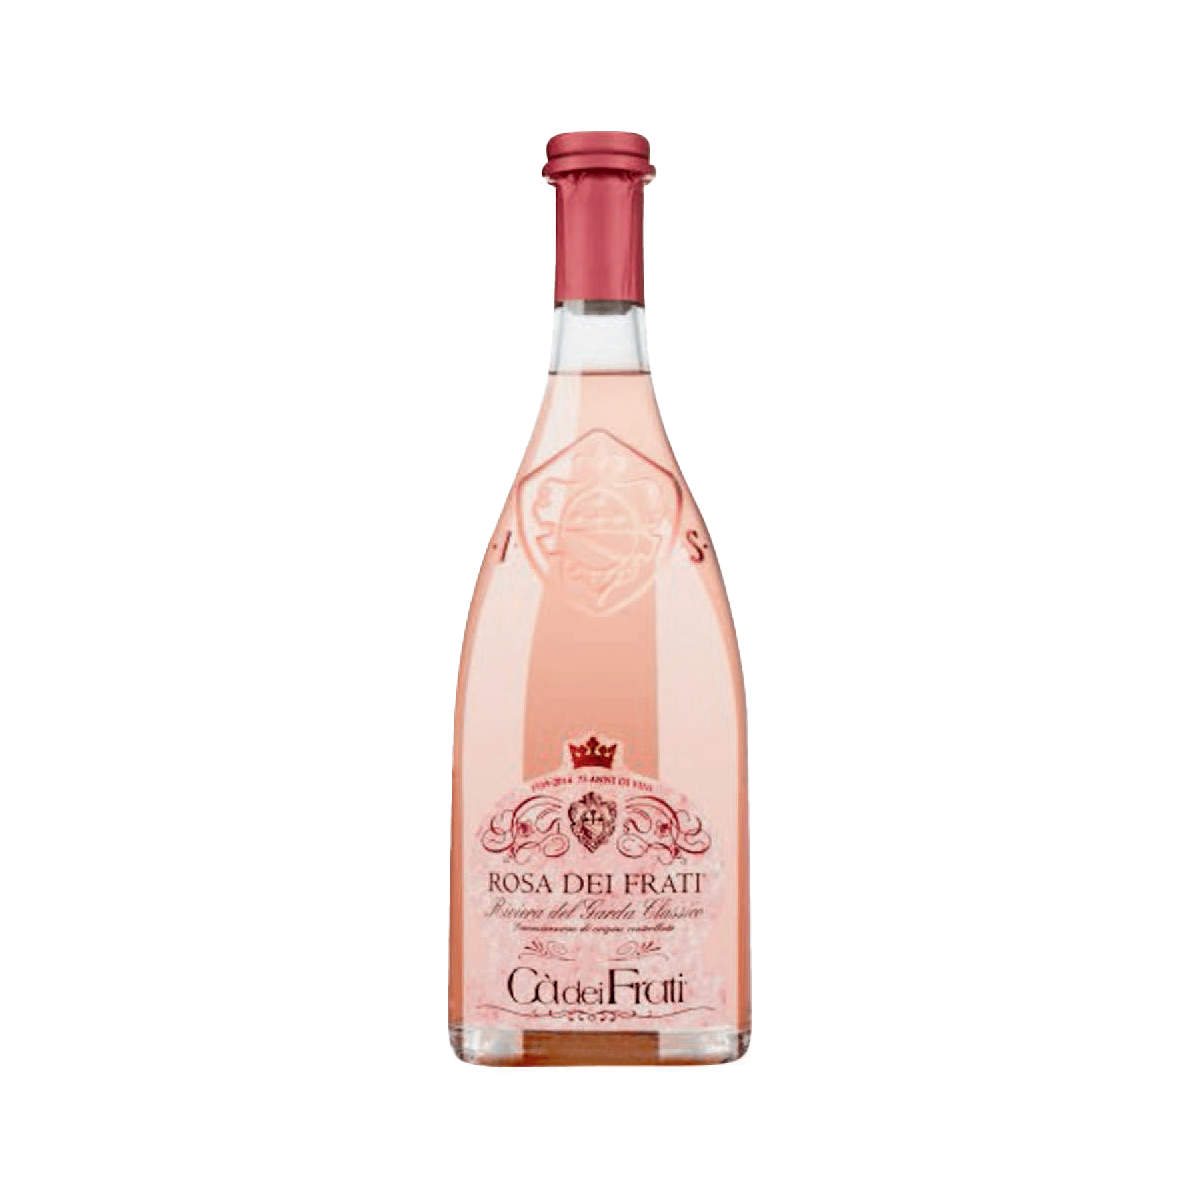 A bottle of Cà dei Frati 2021 'Rosa dei Frati' Rose, Riviera del Garda Classico